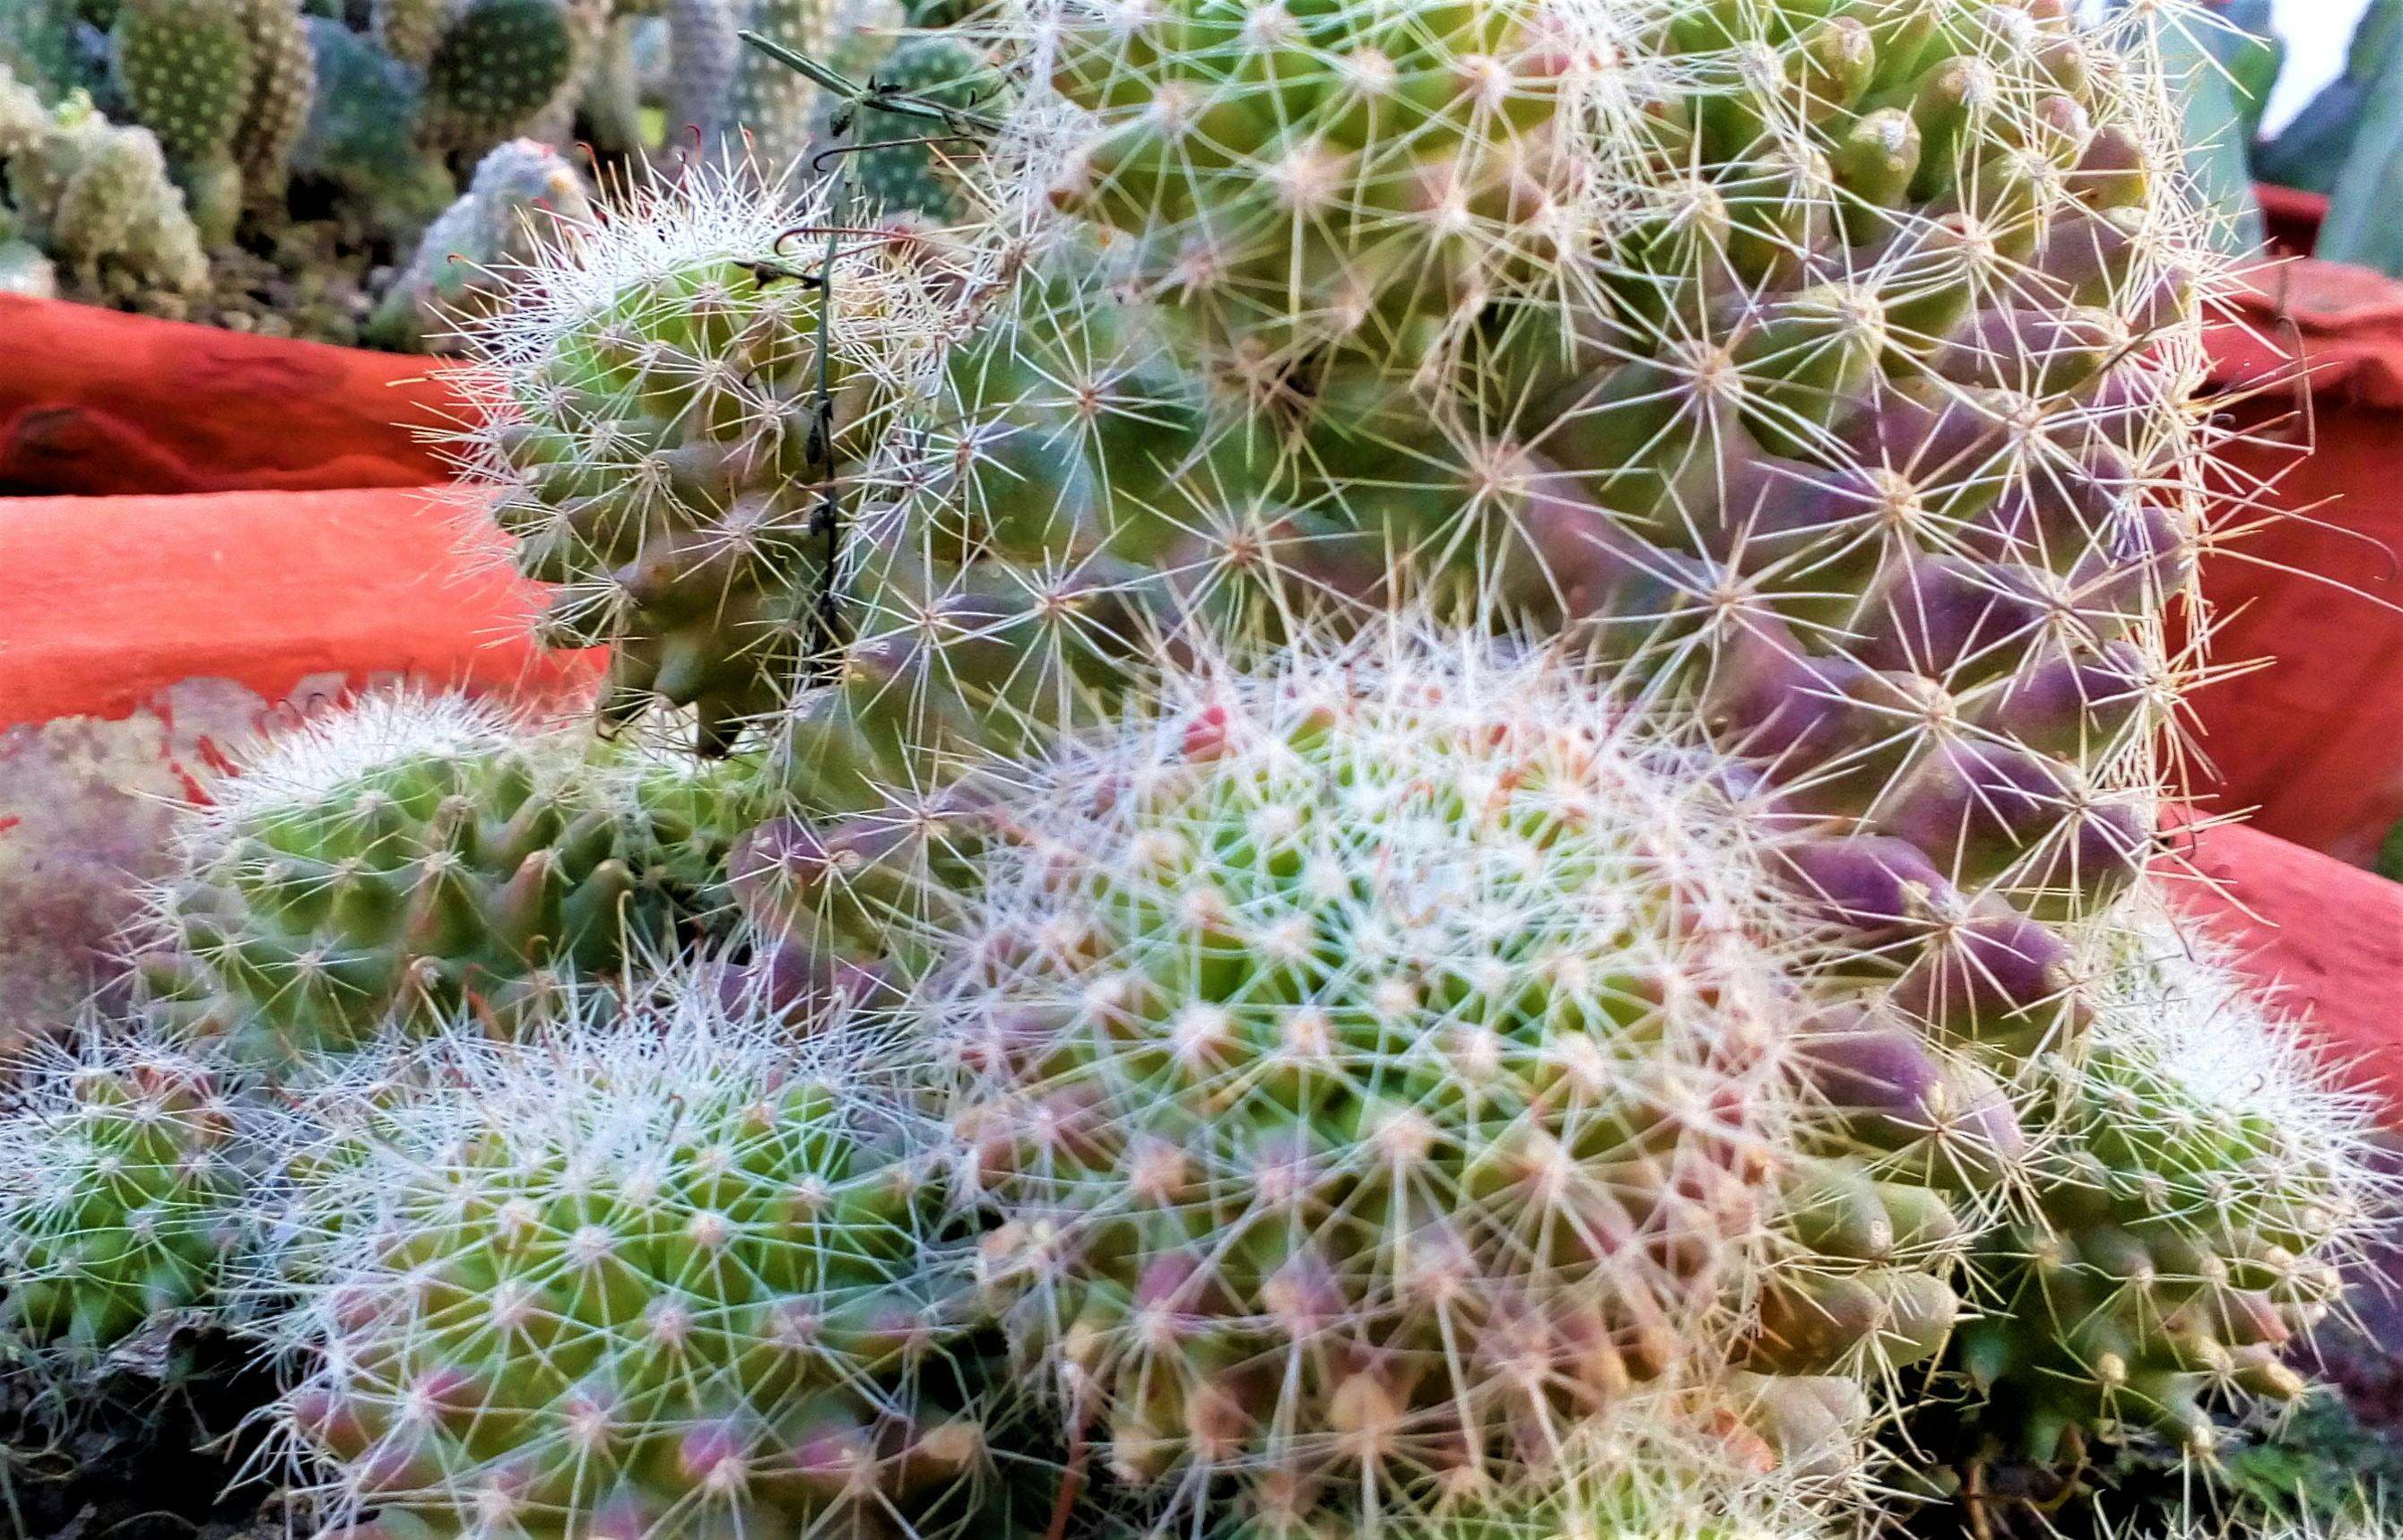 Free stock photo of cactus, cactus flower, cactus plant